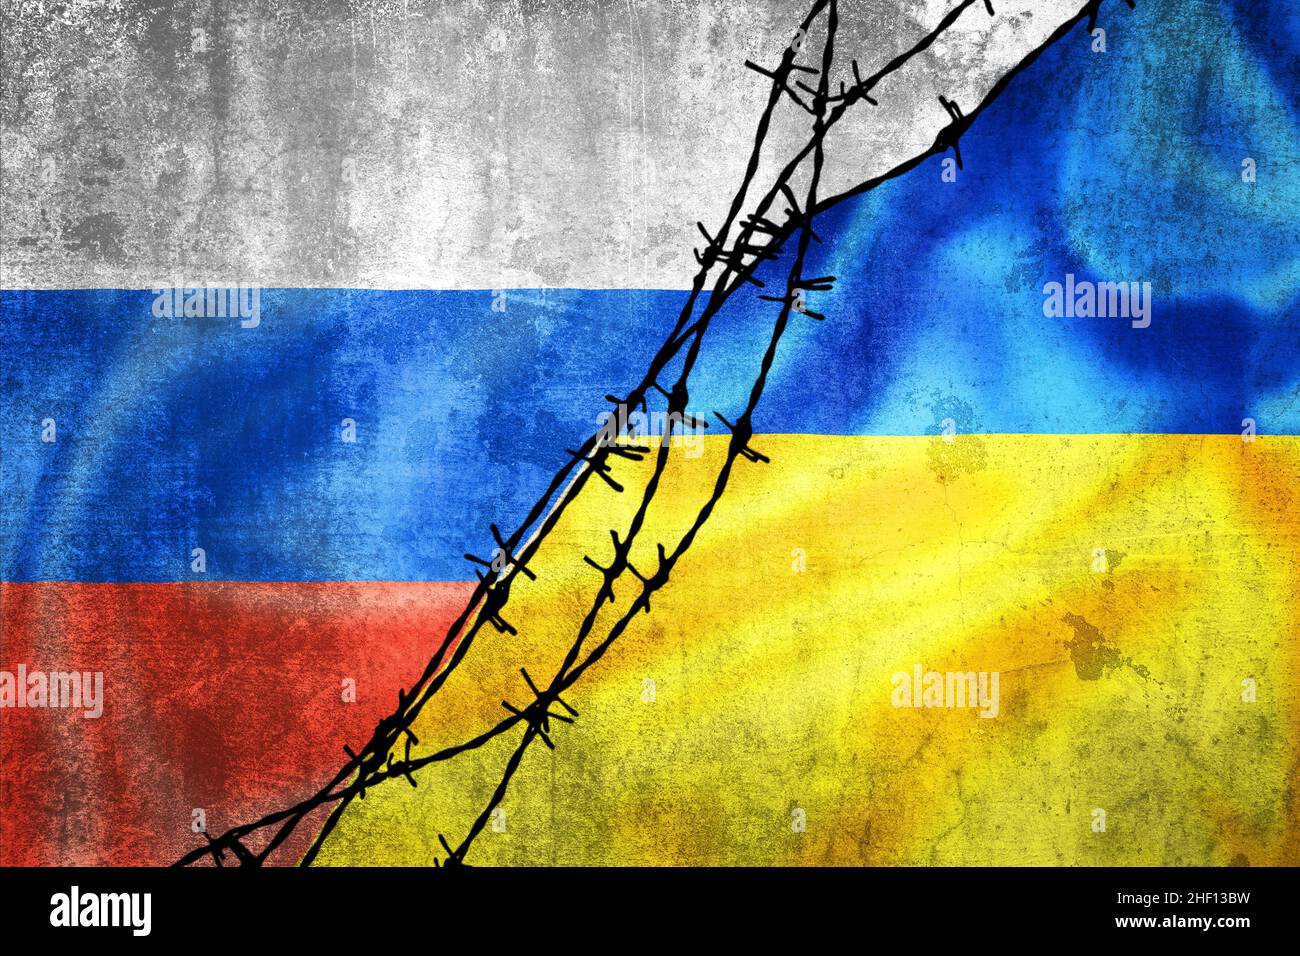 Flaggen der ukraine und russlands krieg ukraine gegen russland Fotos 